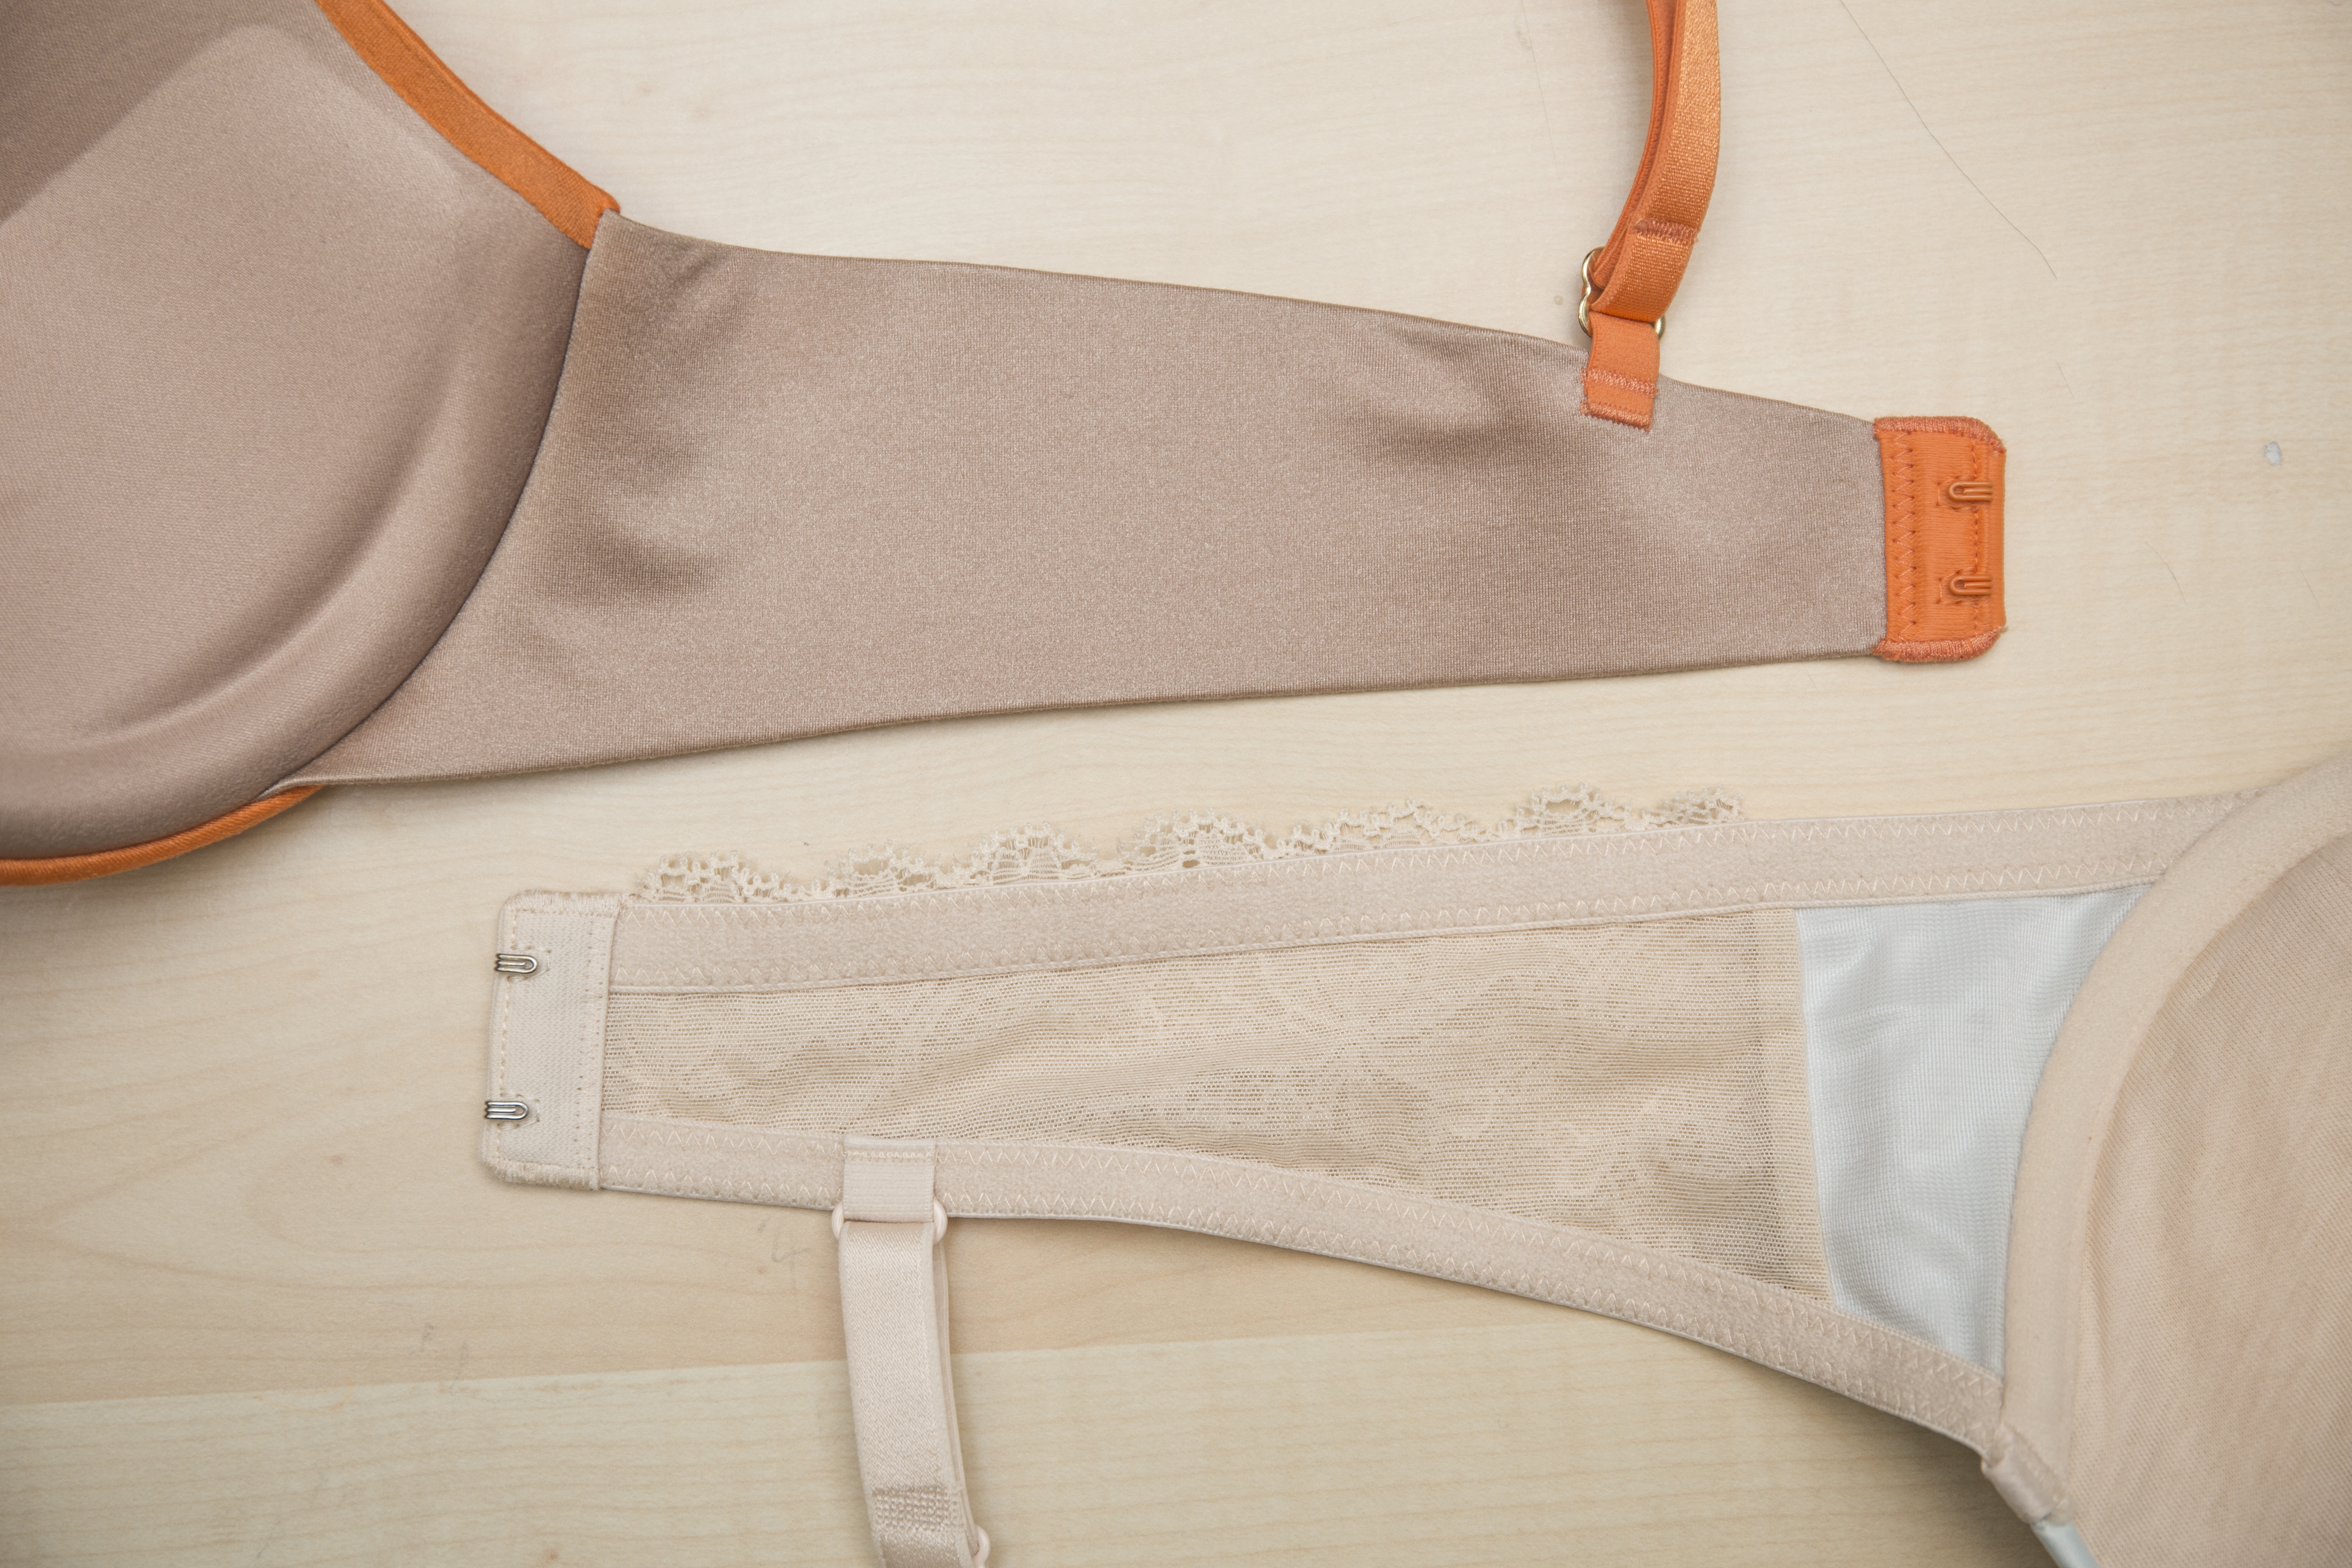 傳統內衣縫有上、下兩條橡筋，新式內衣黏上整塊彈性薄膜以改善背肌平滑度。